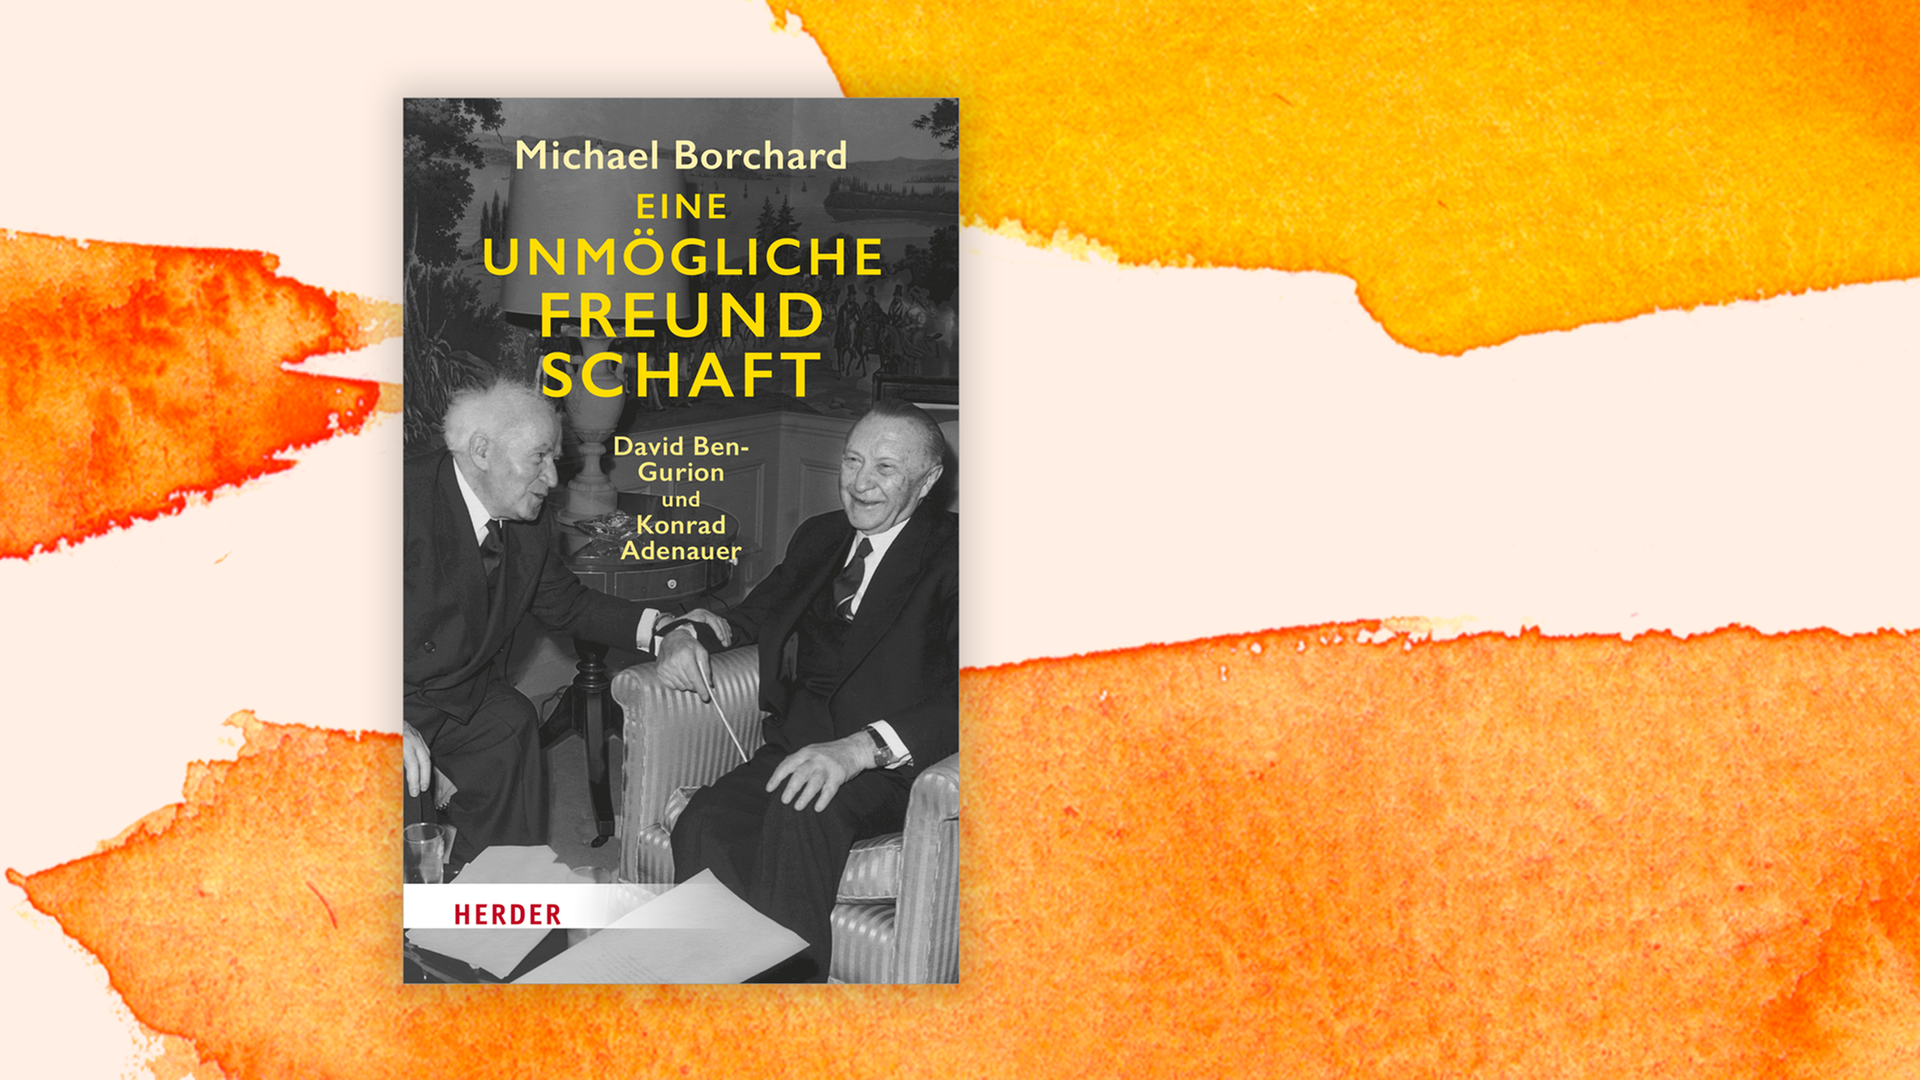 Zu sehen ist das Cover des "Eine unmögliche Freundschaft. David Ben-Gurion und Konrad Adenauer" von Buches Michael Borchard.